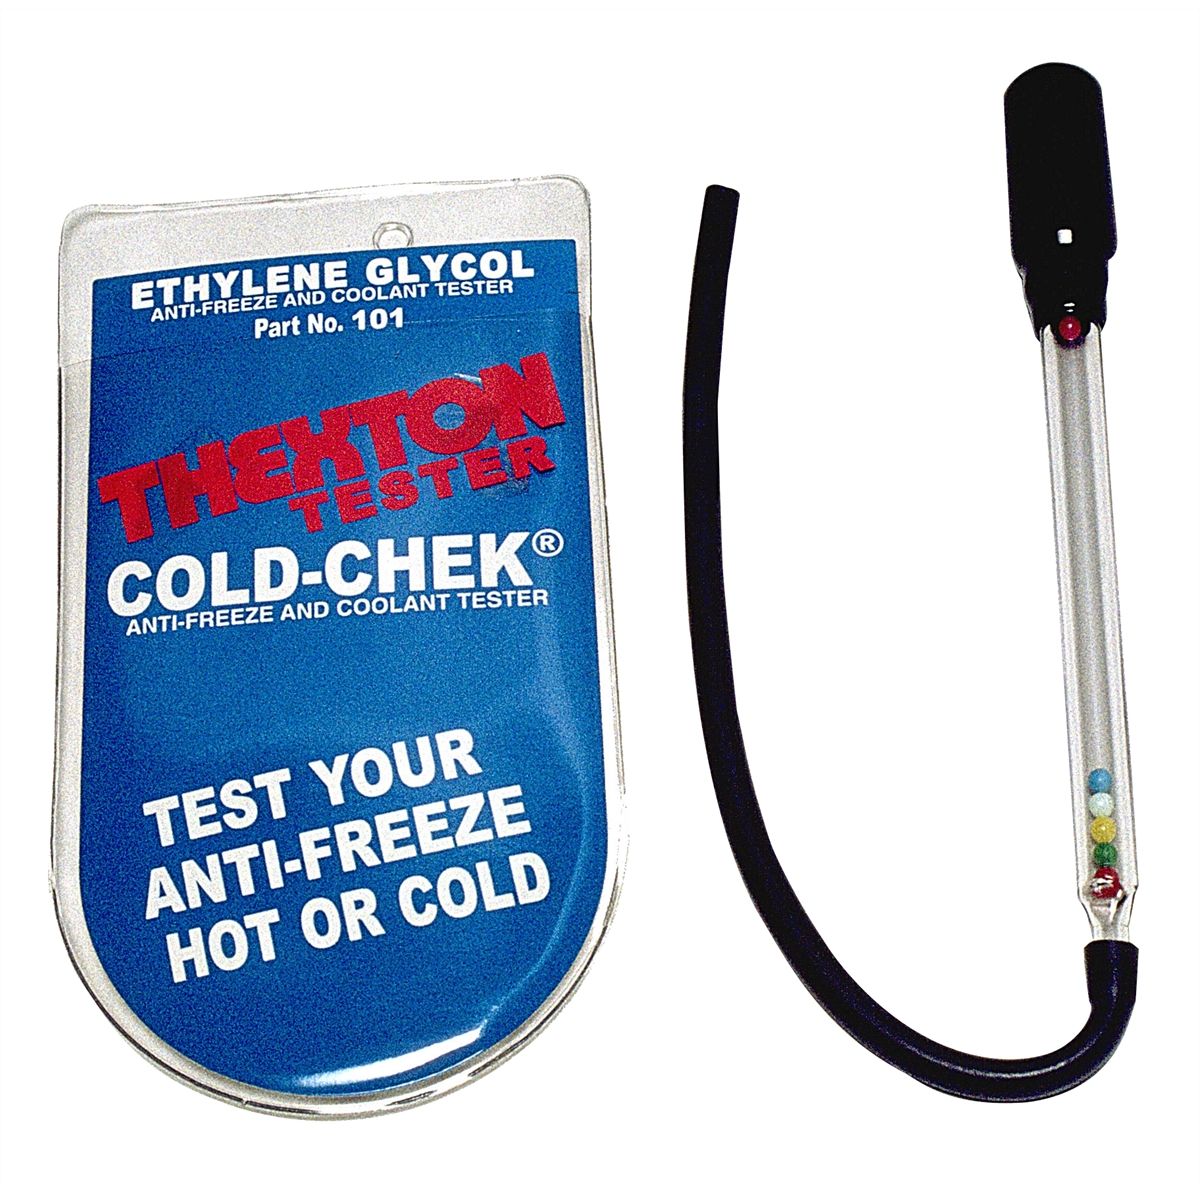 Cold-Chek Anti-Freeze / Coolant Tester w/Shield